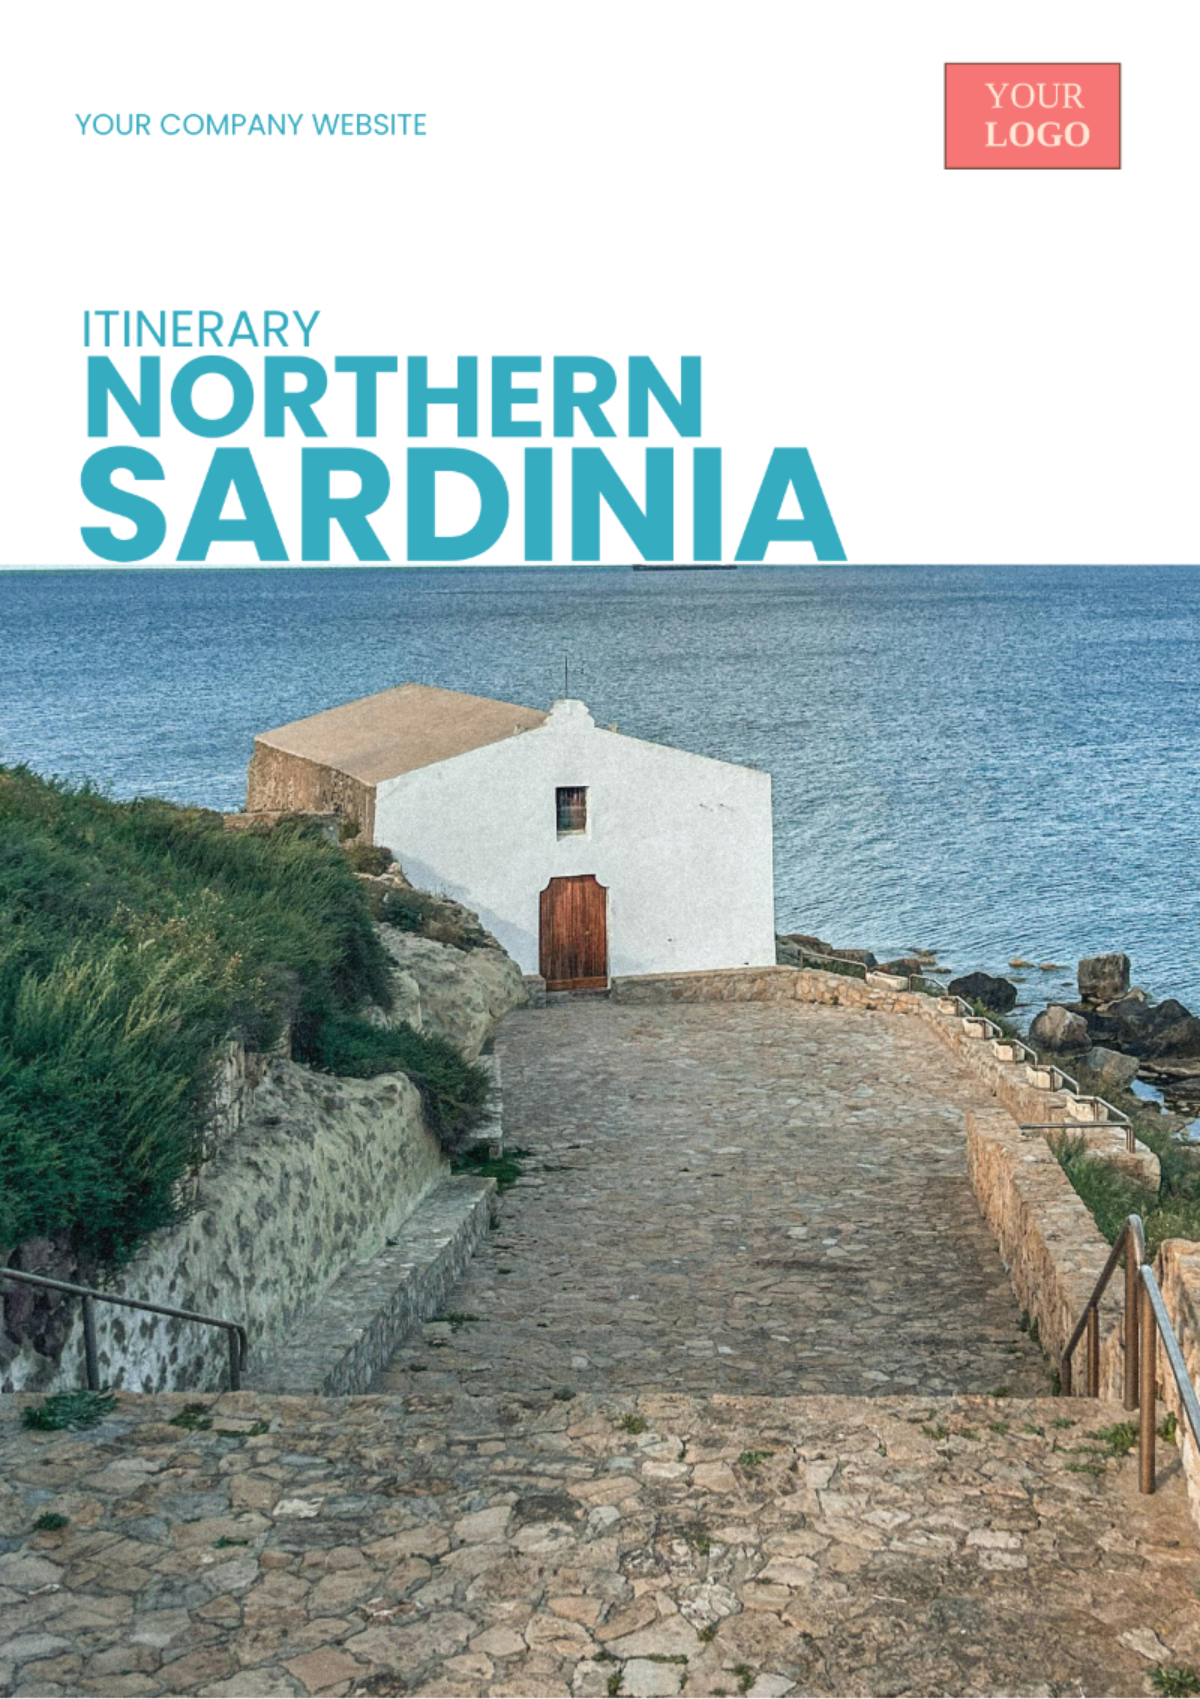 Northern Sardinia Itinerary Template